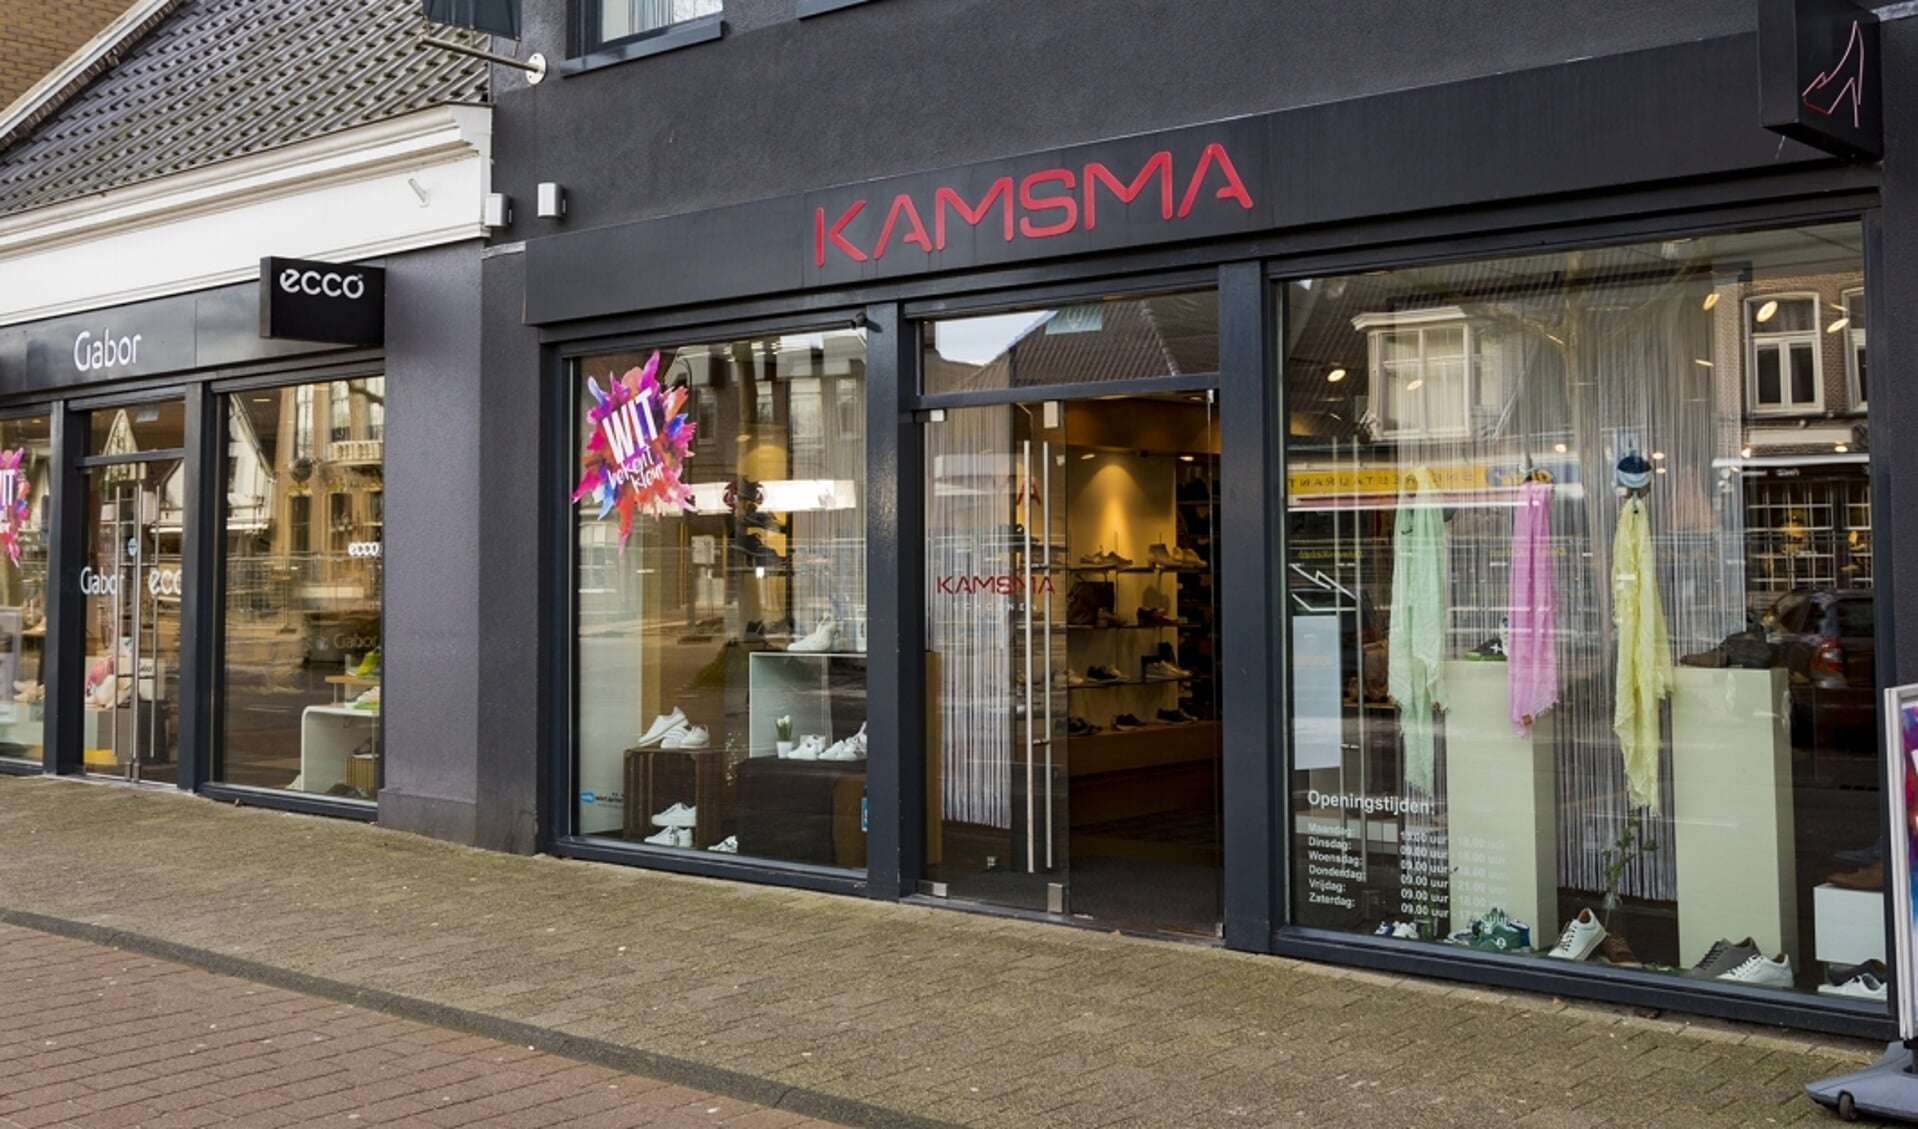 De winkel van Kamsma in Drachten is onlangs verbouwd!